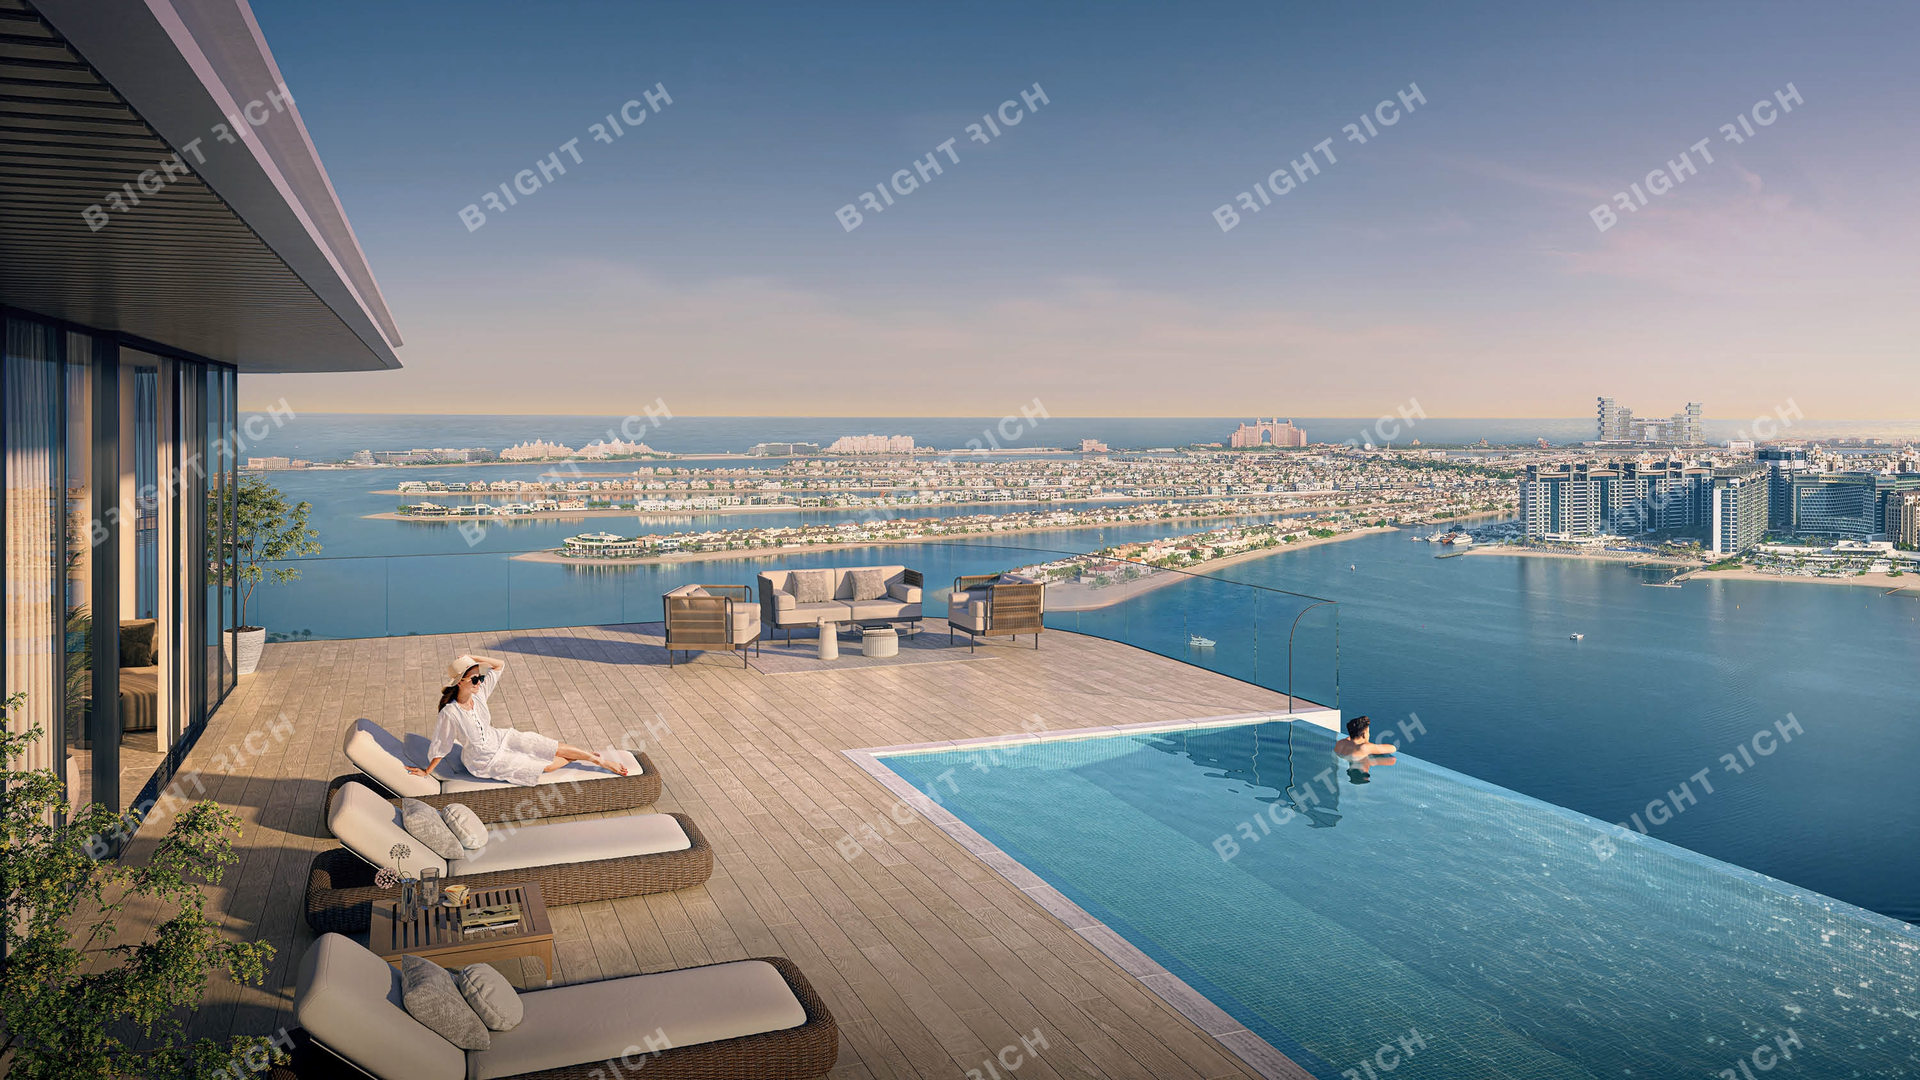 Seapoint, apart complex in Dubai - 2